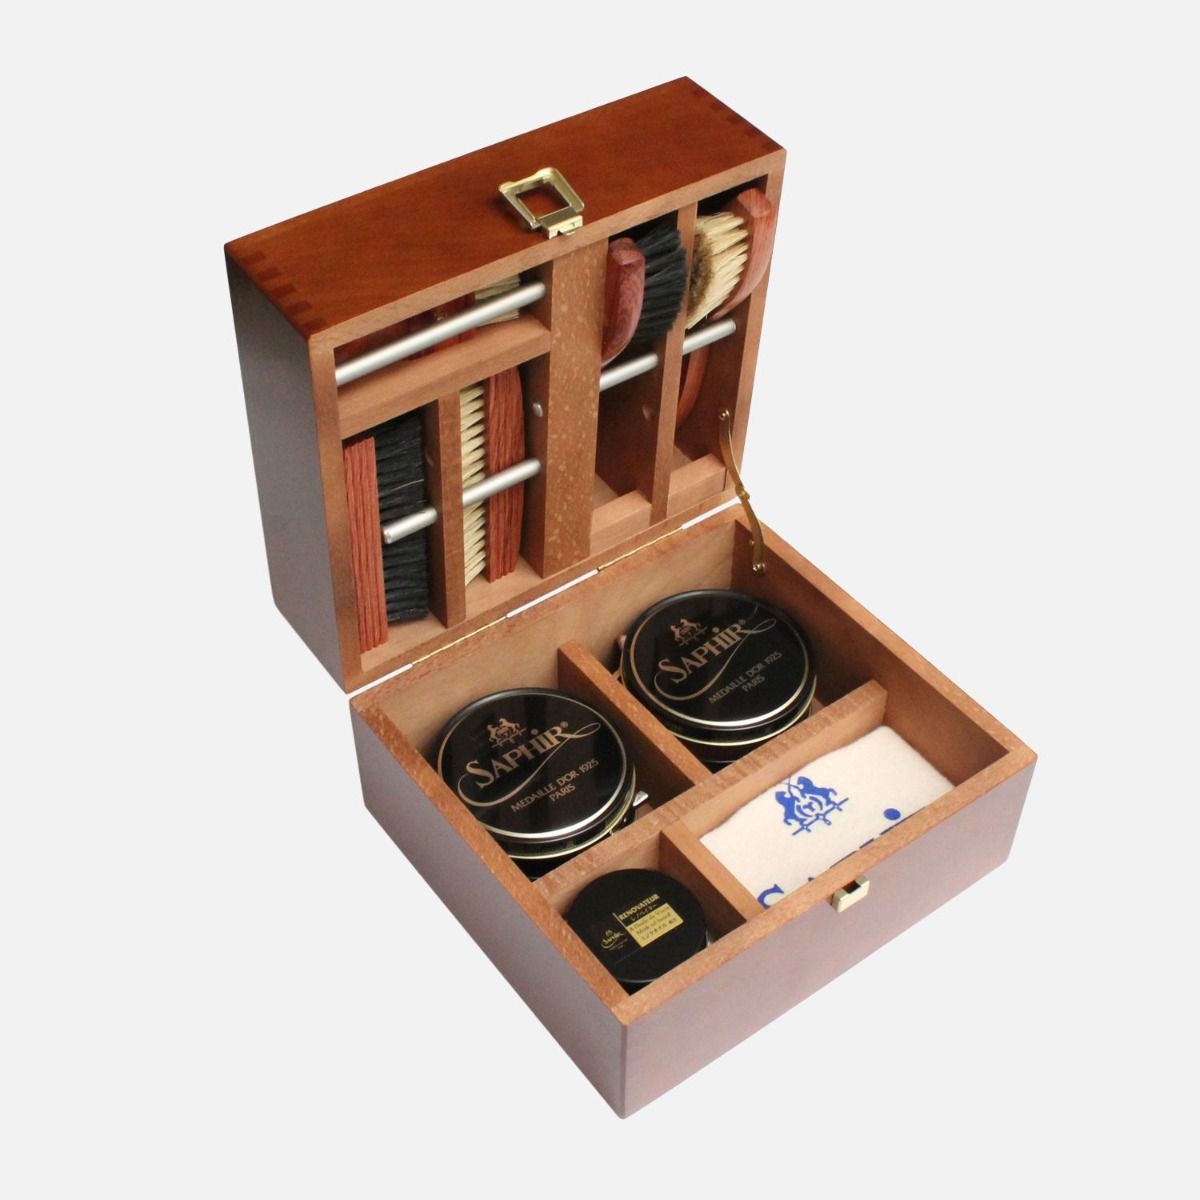 shoe care kit wooden box